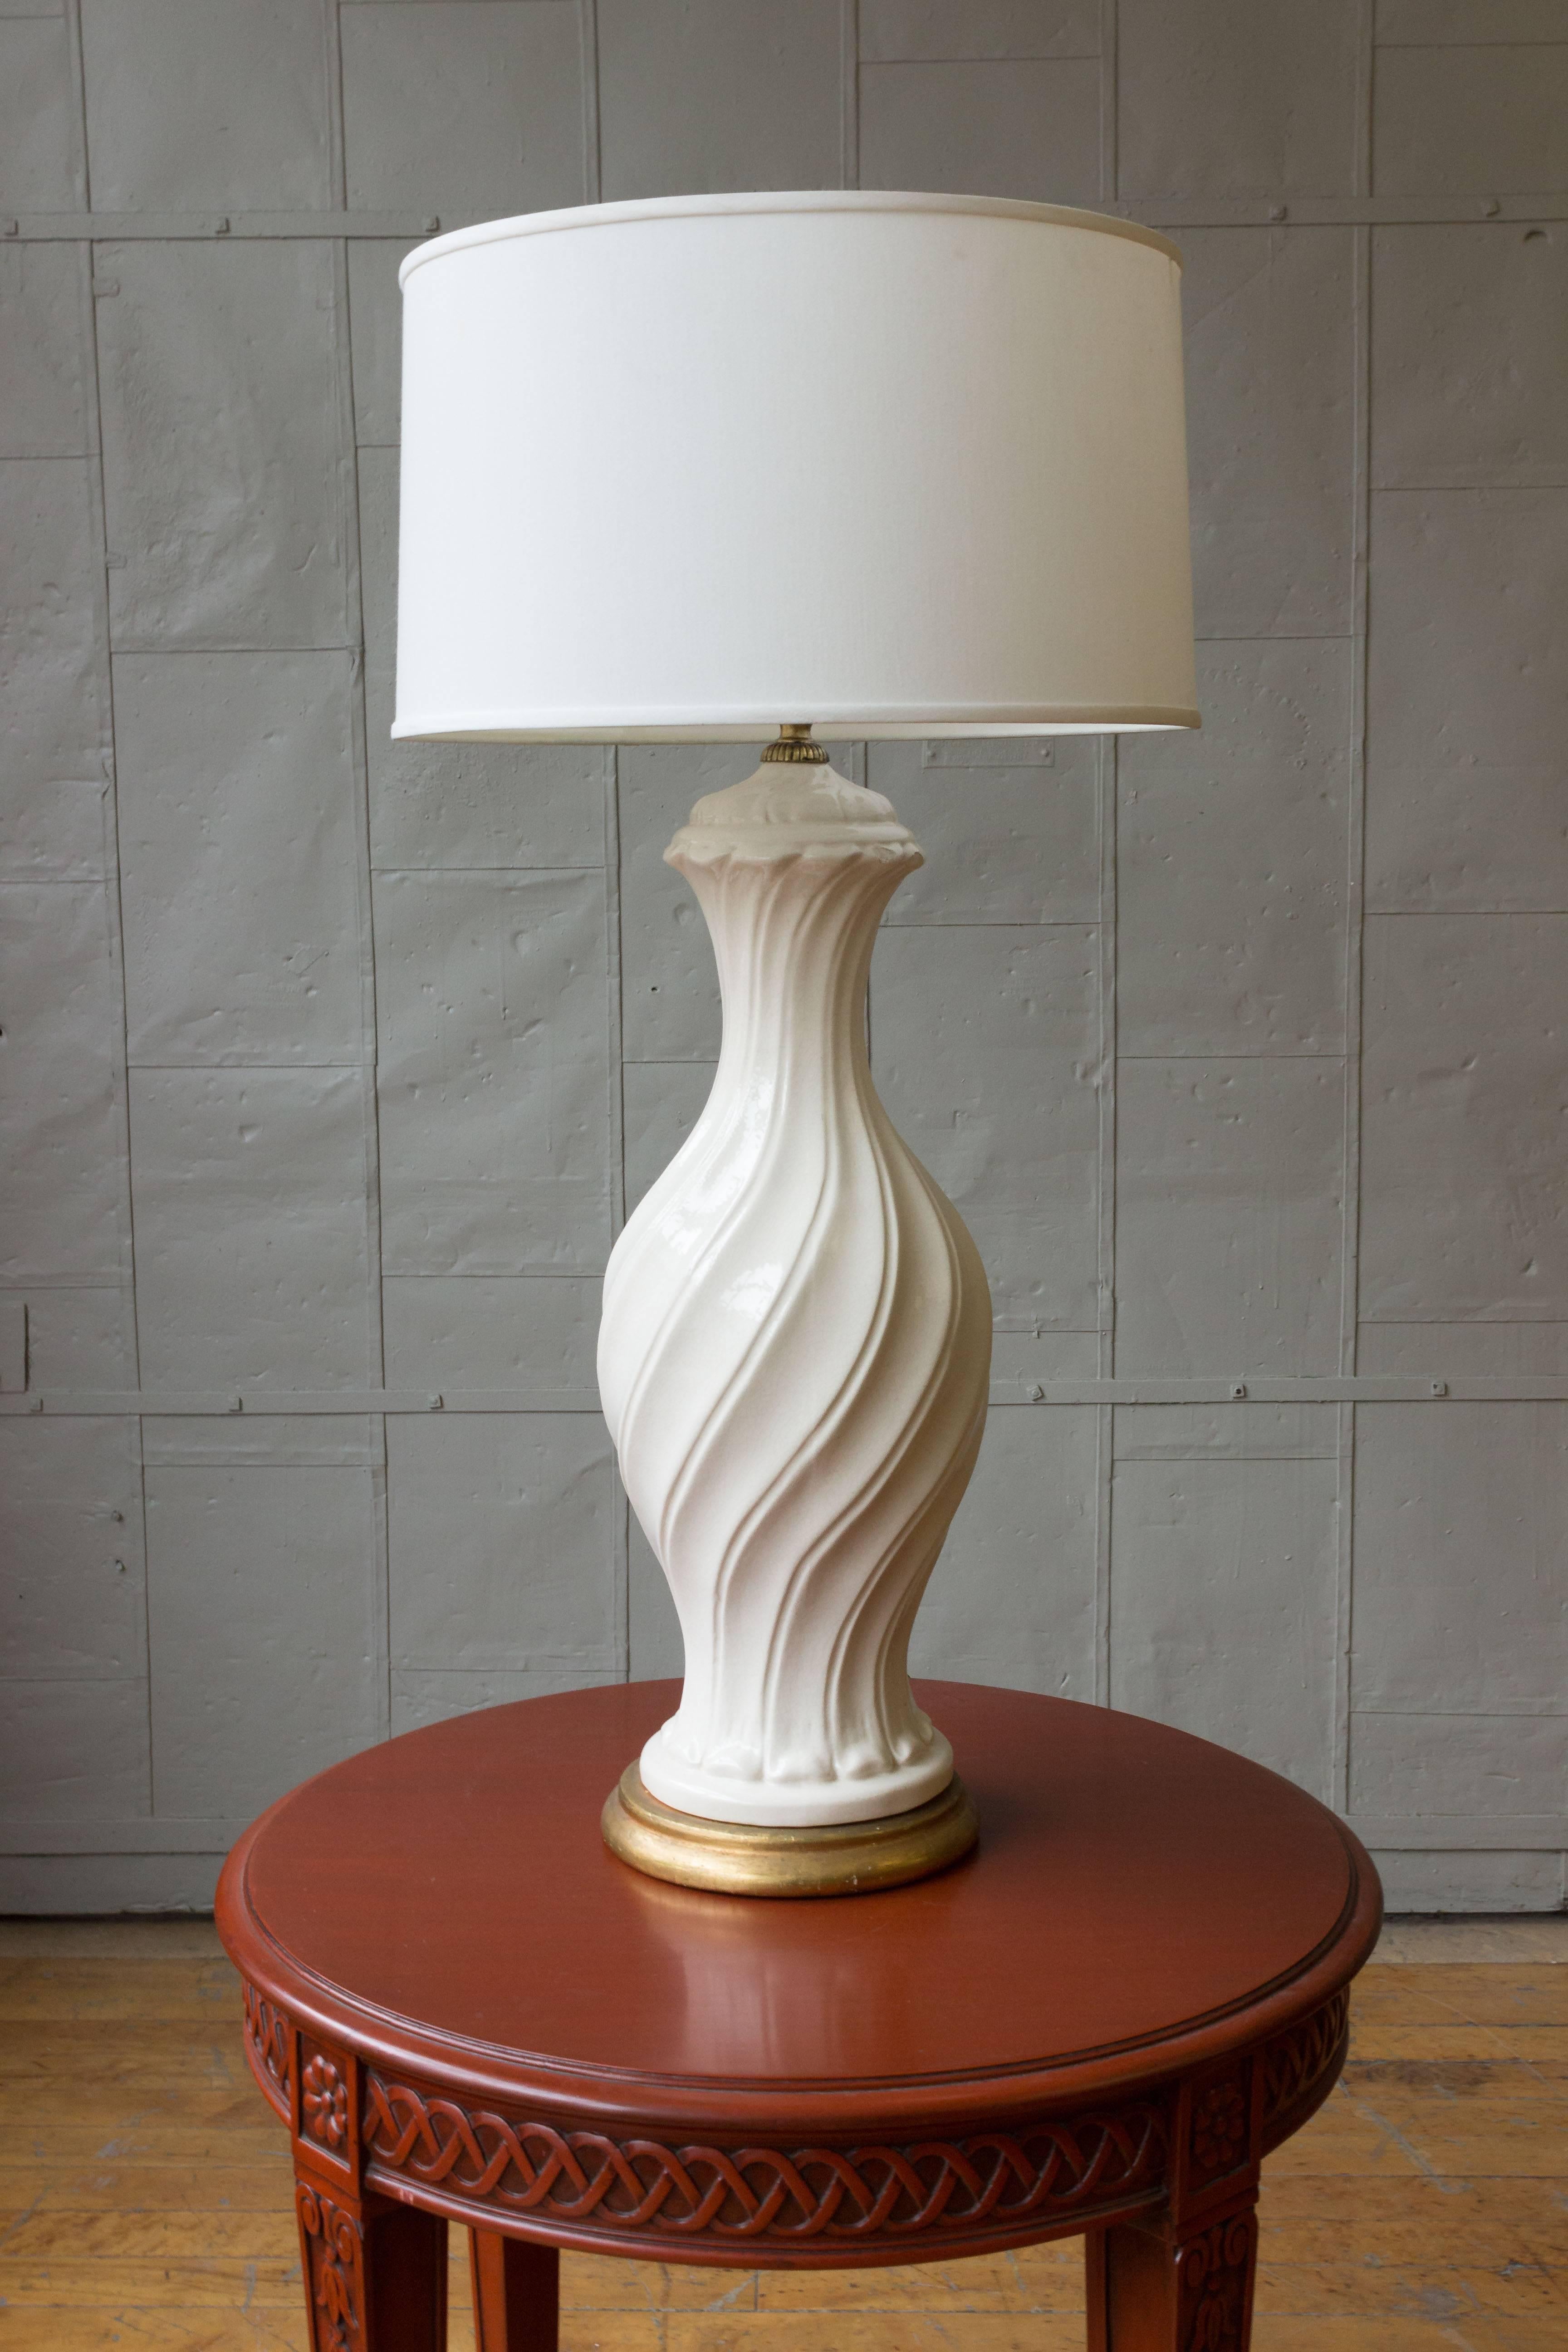 Cette lampe espagnole des années 1950 en céramique blanche surdimensionnée avec une glaçure craquelée et une base en or antique apportera un look stylé et élégant à tout espace de vie. Avec sa taille et son joli design tourbillonnant, cette lampe ne